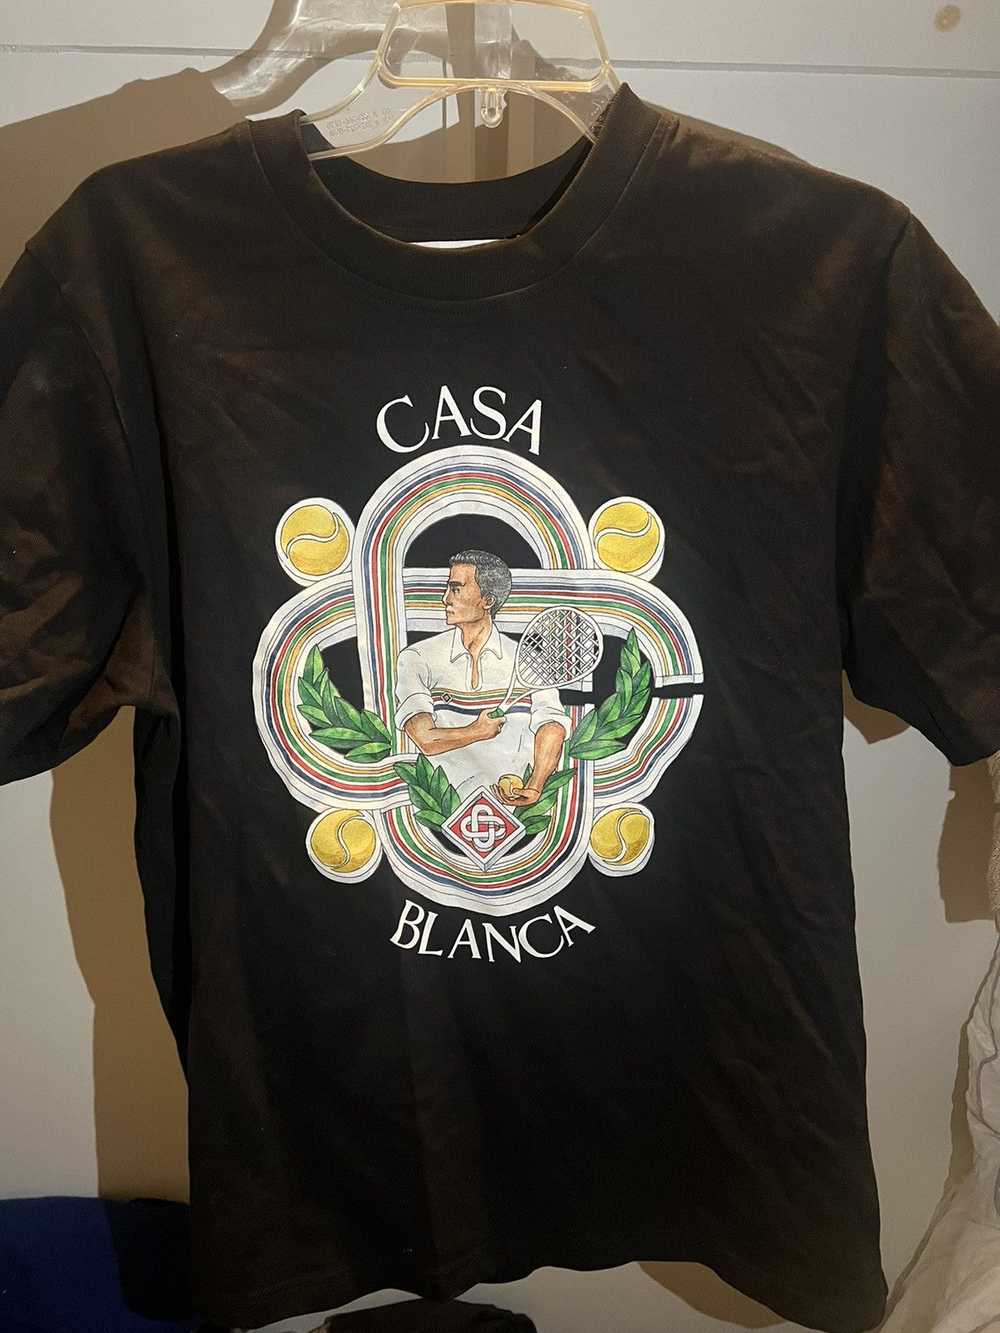 Casablanca Casablanca Black “Le Joueur” shirt - image 2